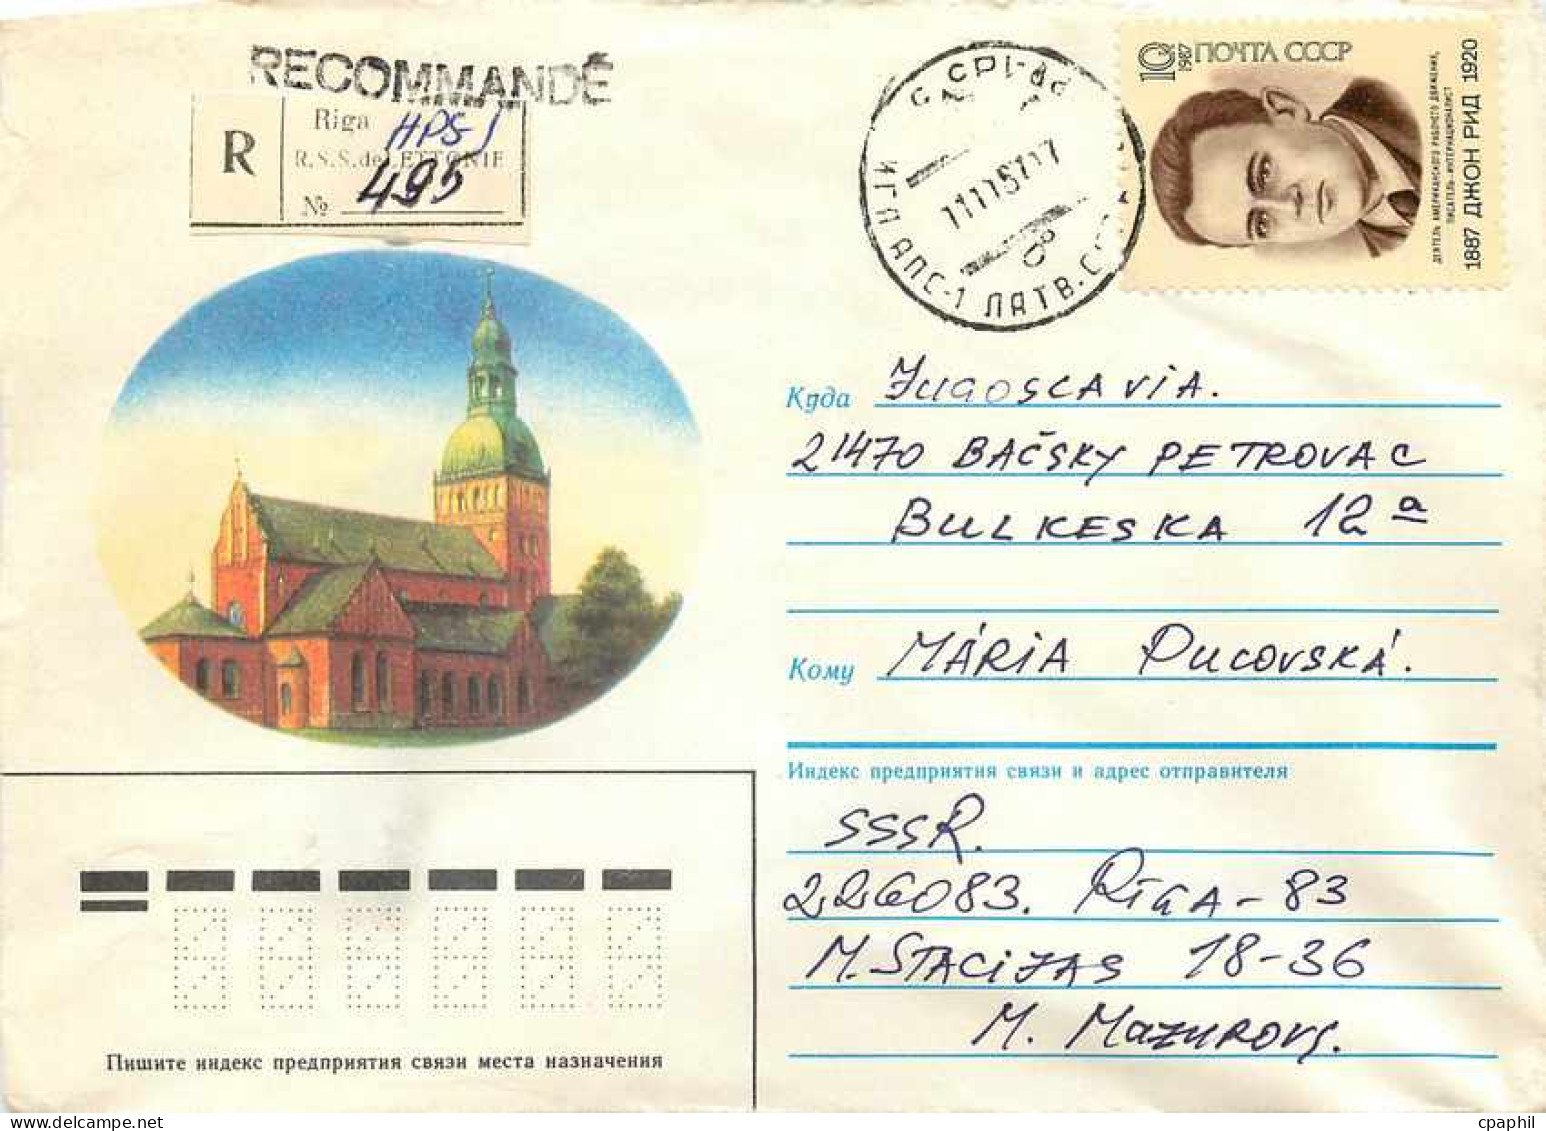 Russie Russia Entier Postal Stationary  - Non Classificati